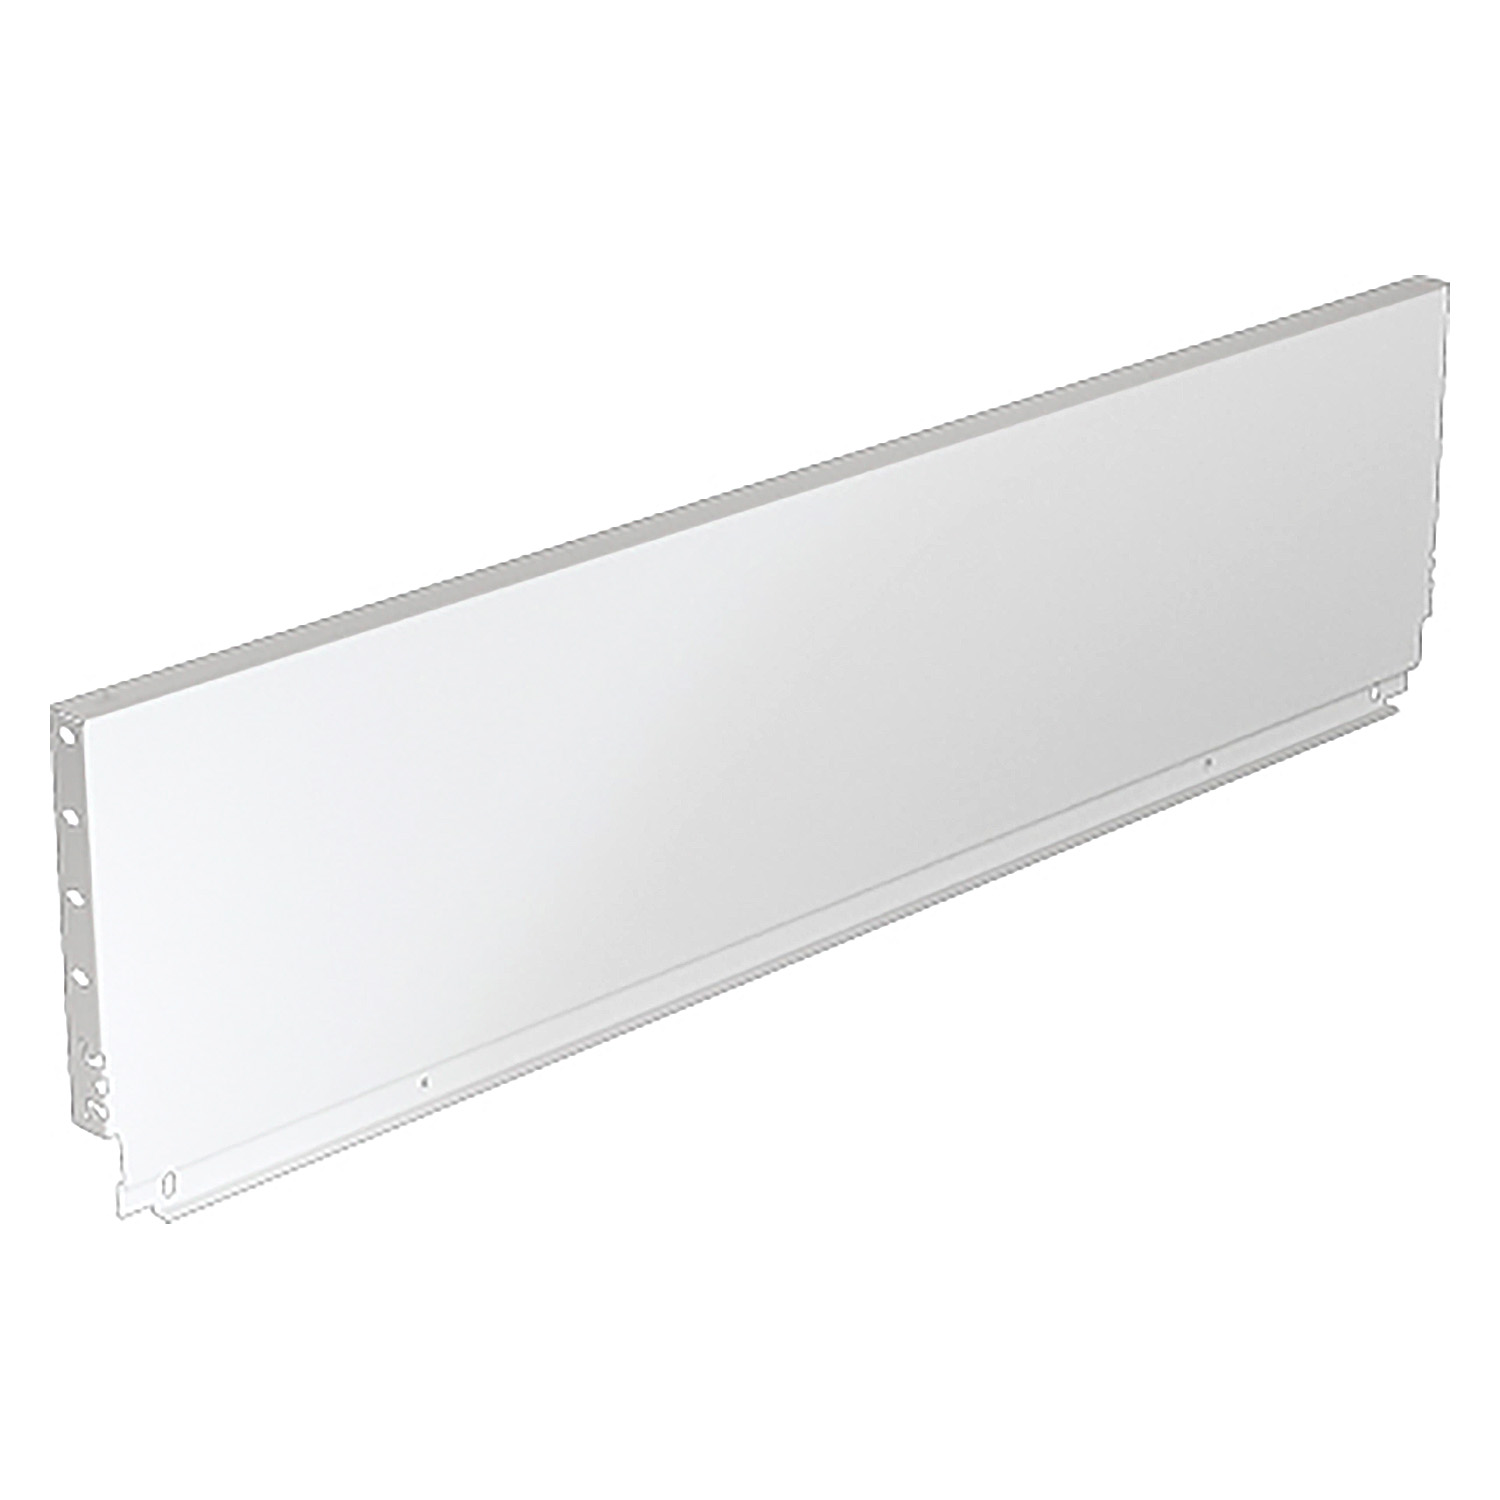 HETTICH Stahlrückwand ArciTech, 218 x 600 mm, weiß, 9121622